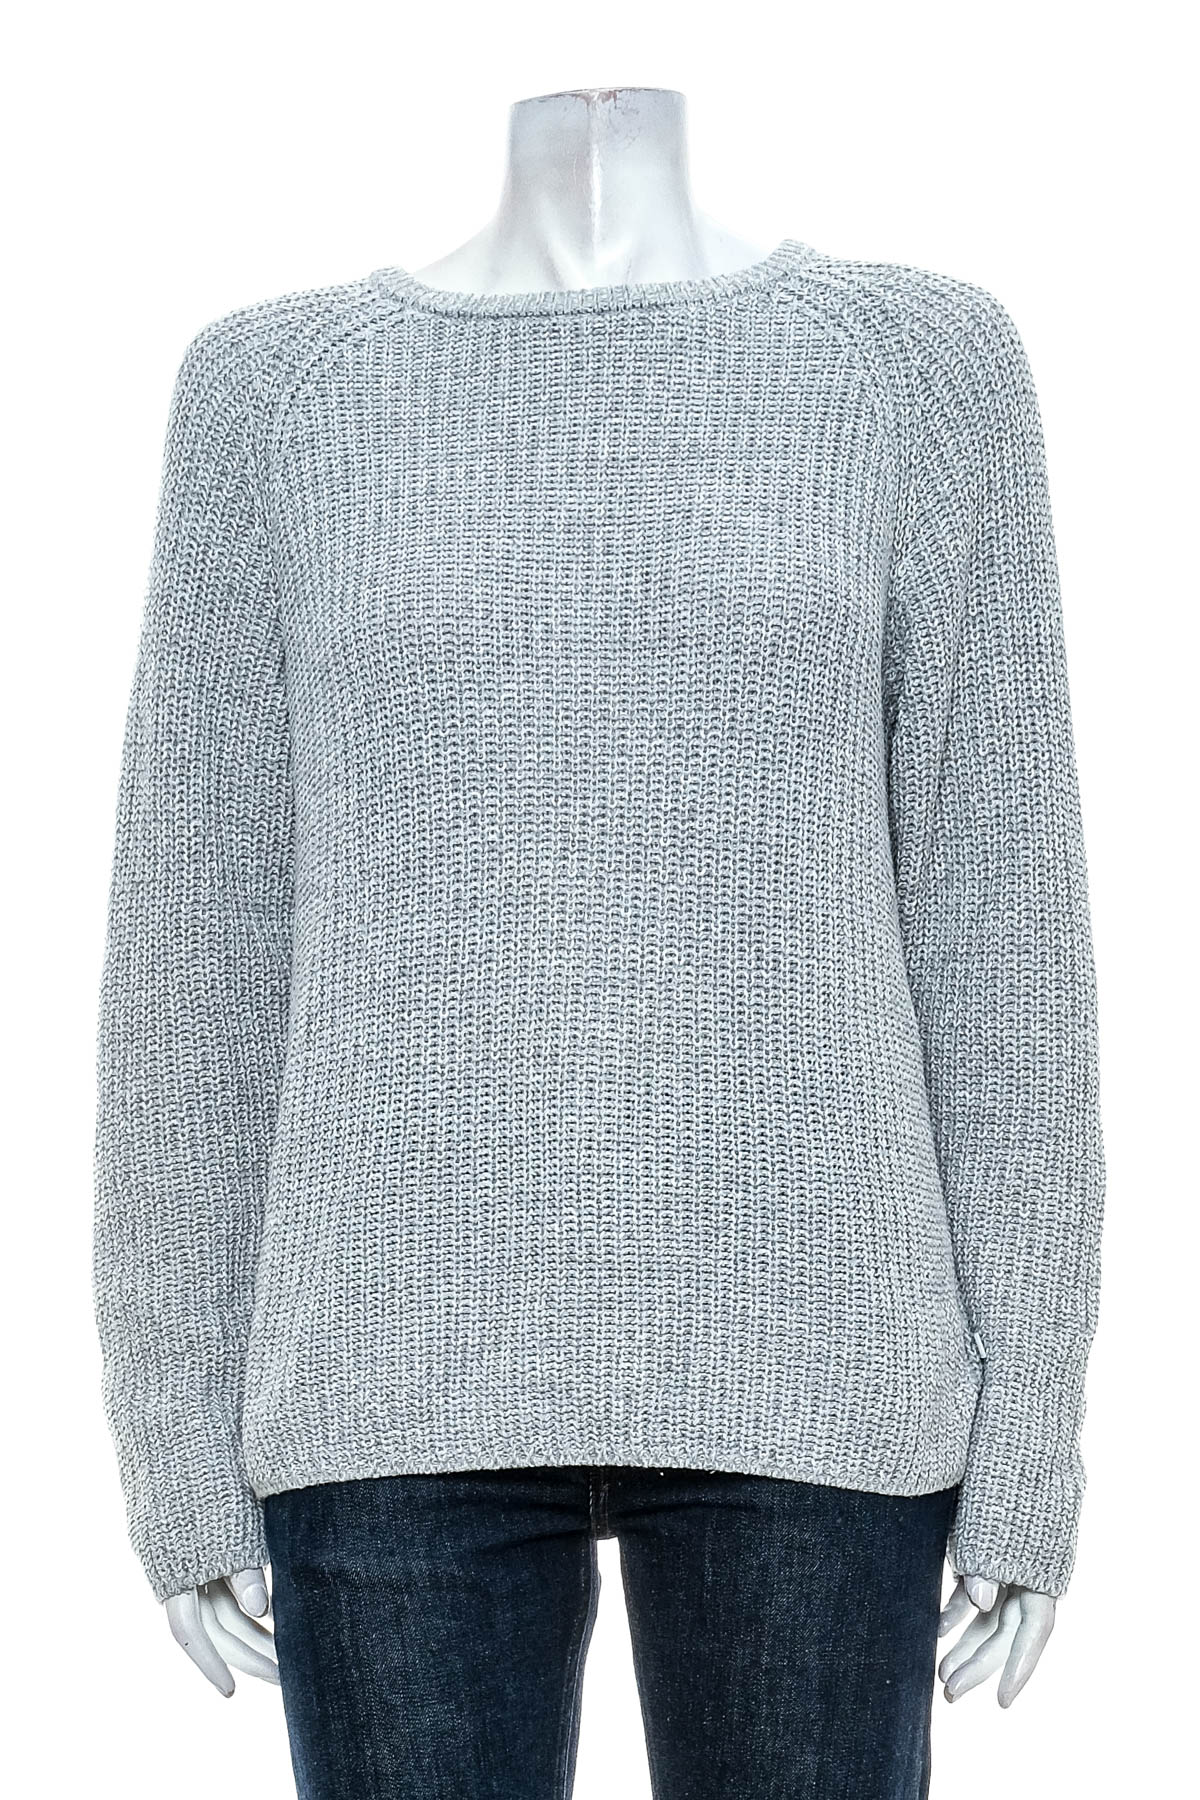 Women's sweater - Q/S - 0